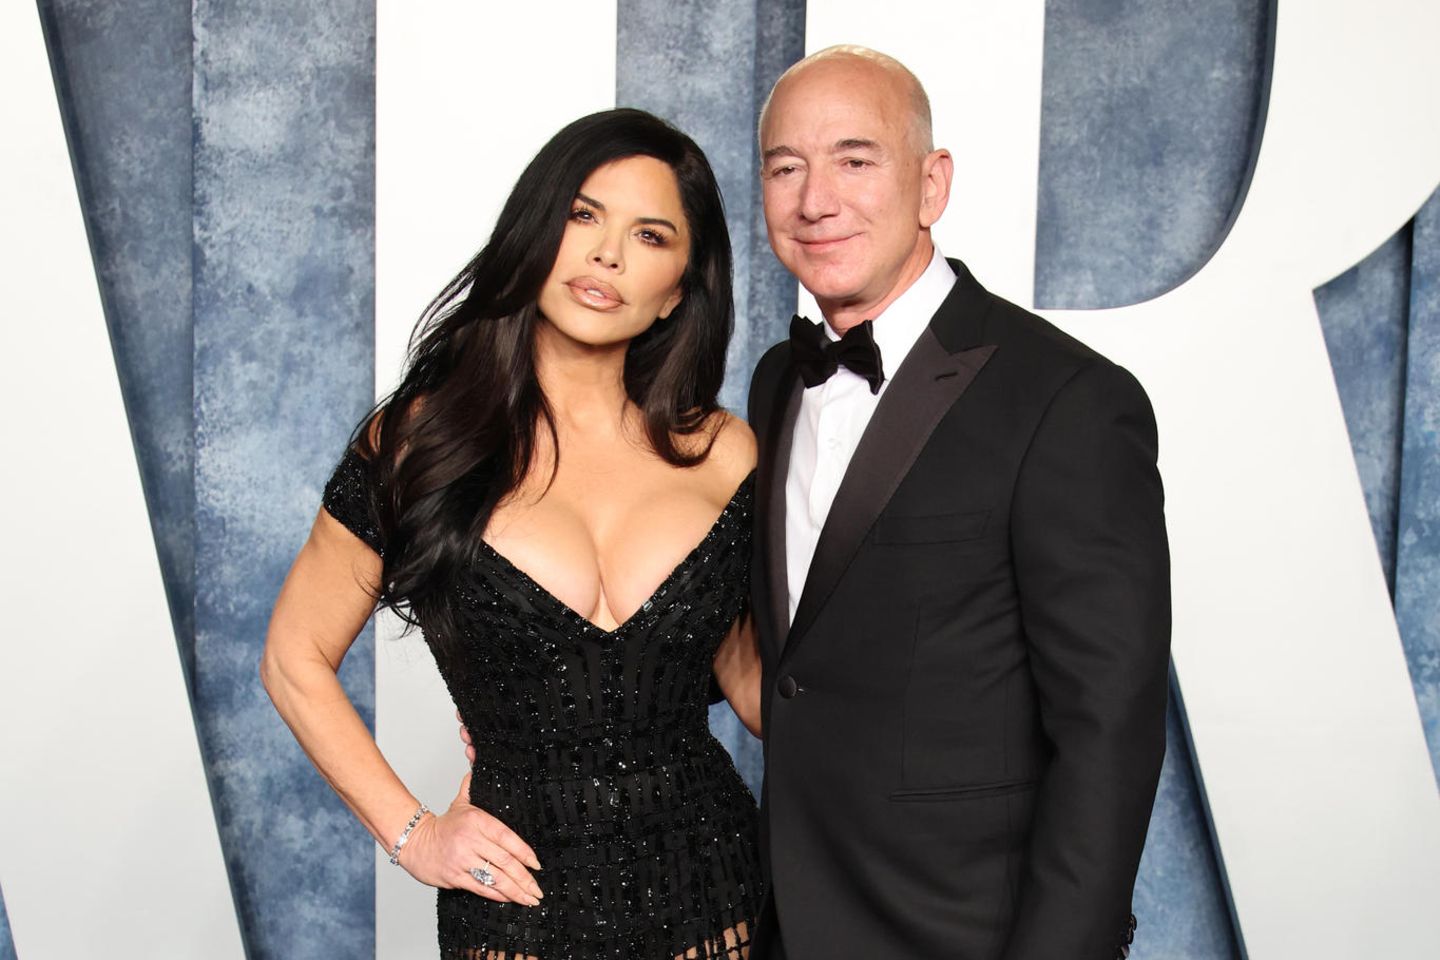 Lauren Sánchez und Jeff Bezos sind gern gesehene Gäste auf Glamour-Events.